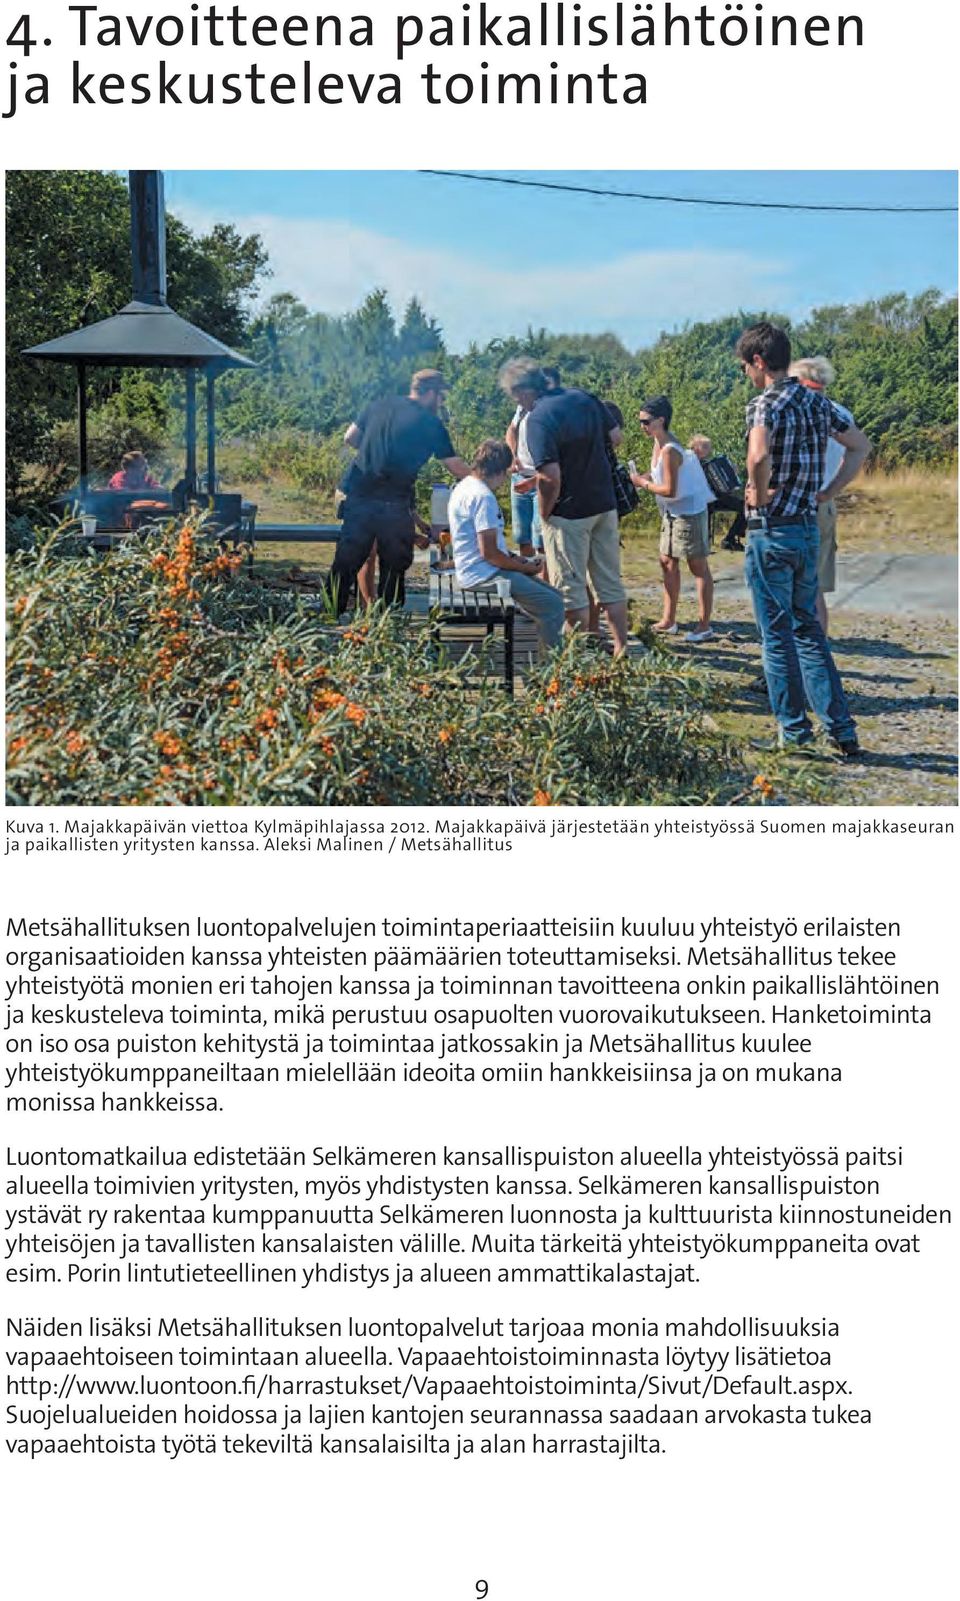 Aleksi Malinen / Metsähallitus Metsähallituksen luontopalvelujen toimintaperiaatteisiin kuuluu yhteistyö erilaisten organisaatioiden kanssa yhteisten päämäärien toteuttamiseksi.